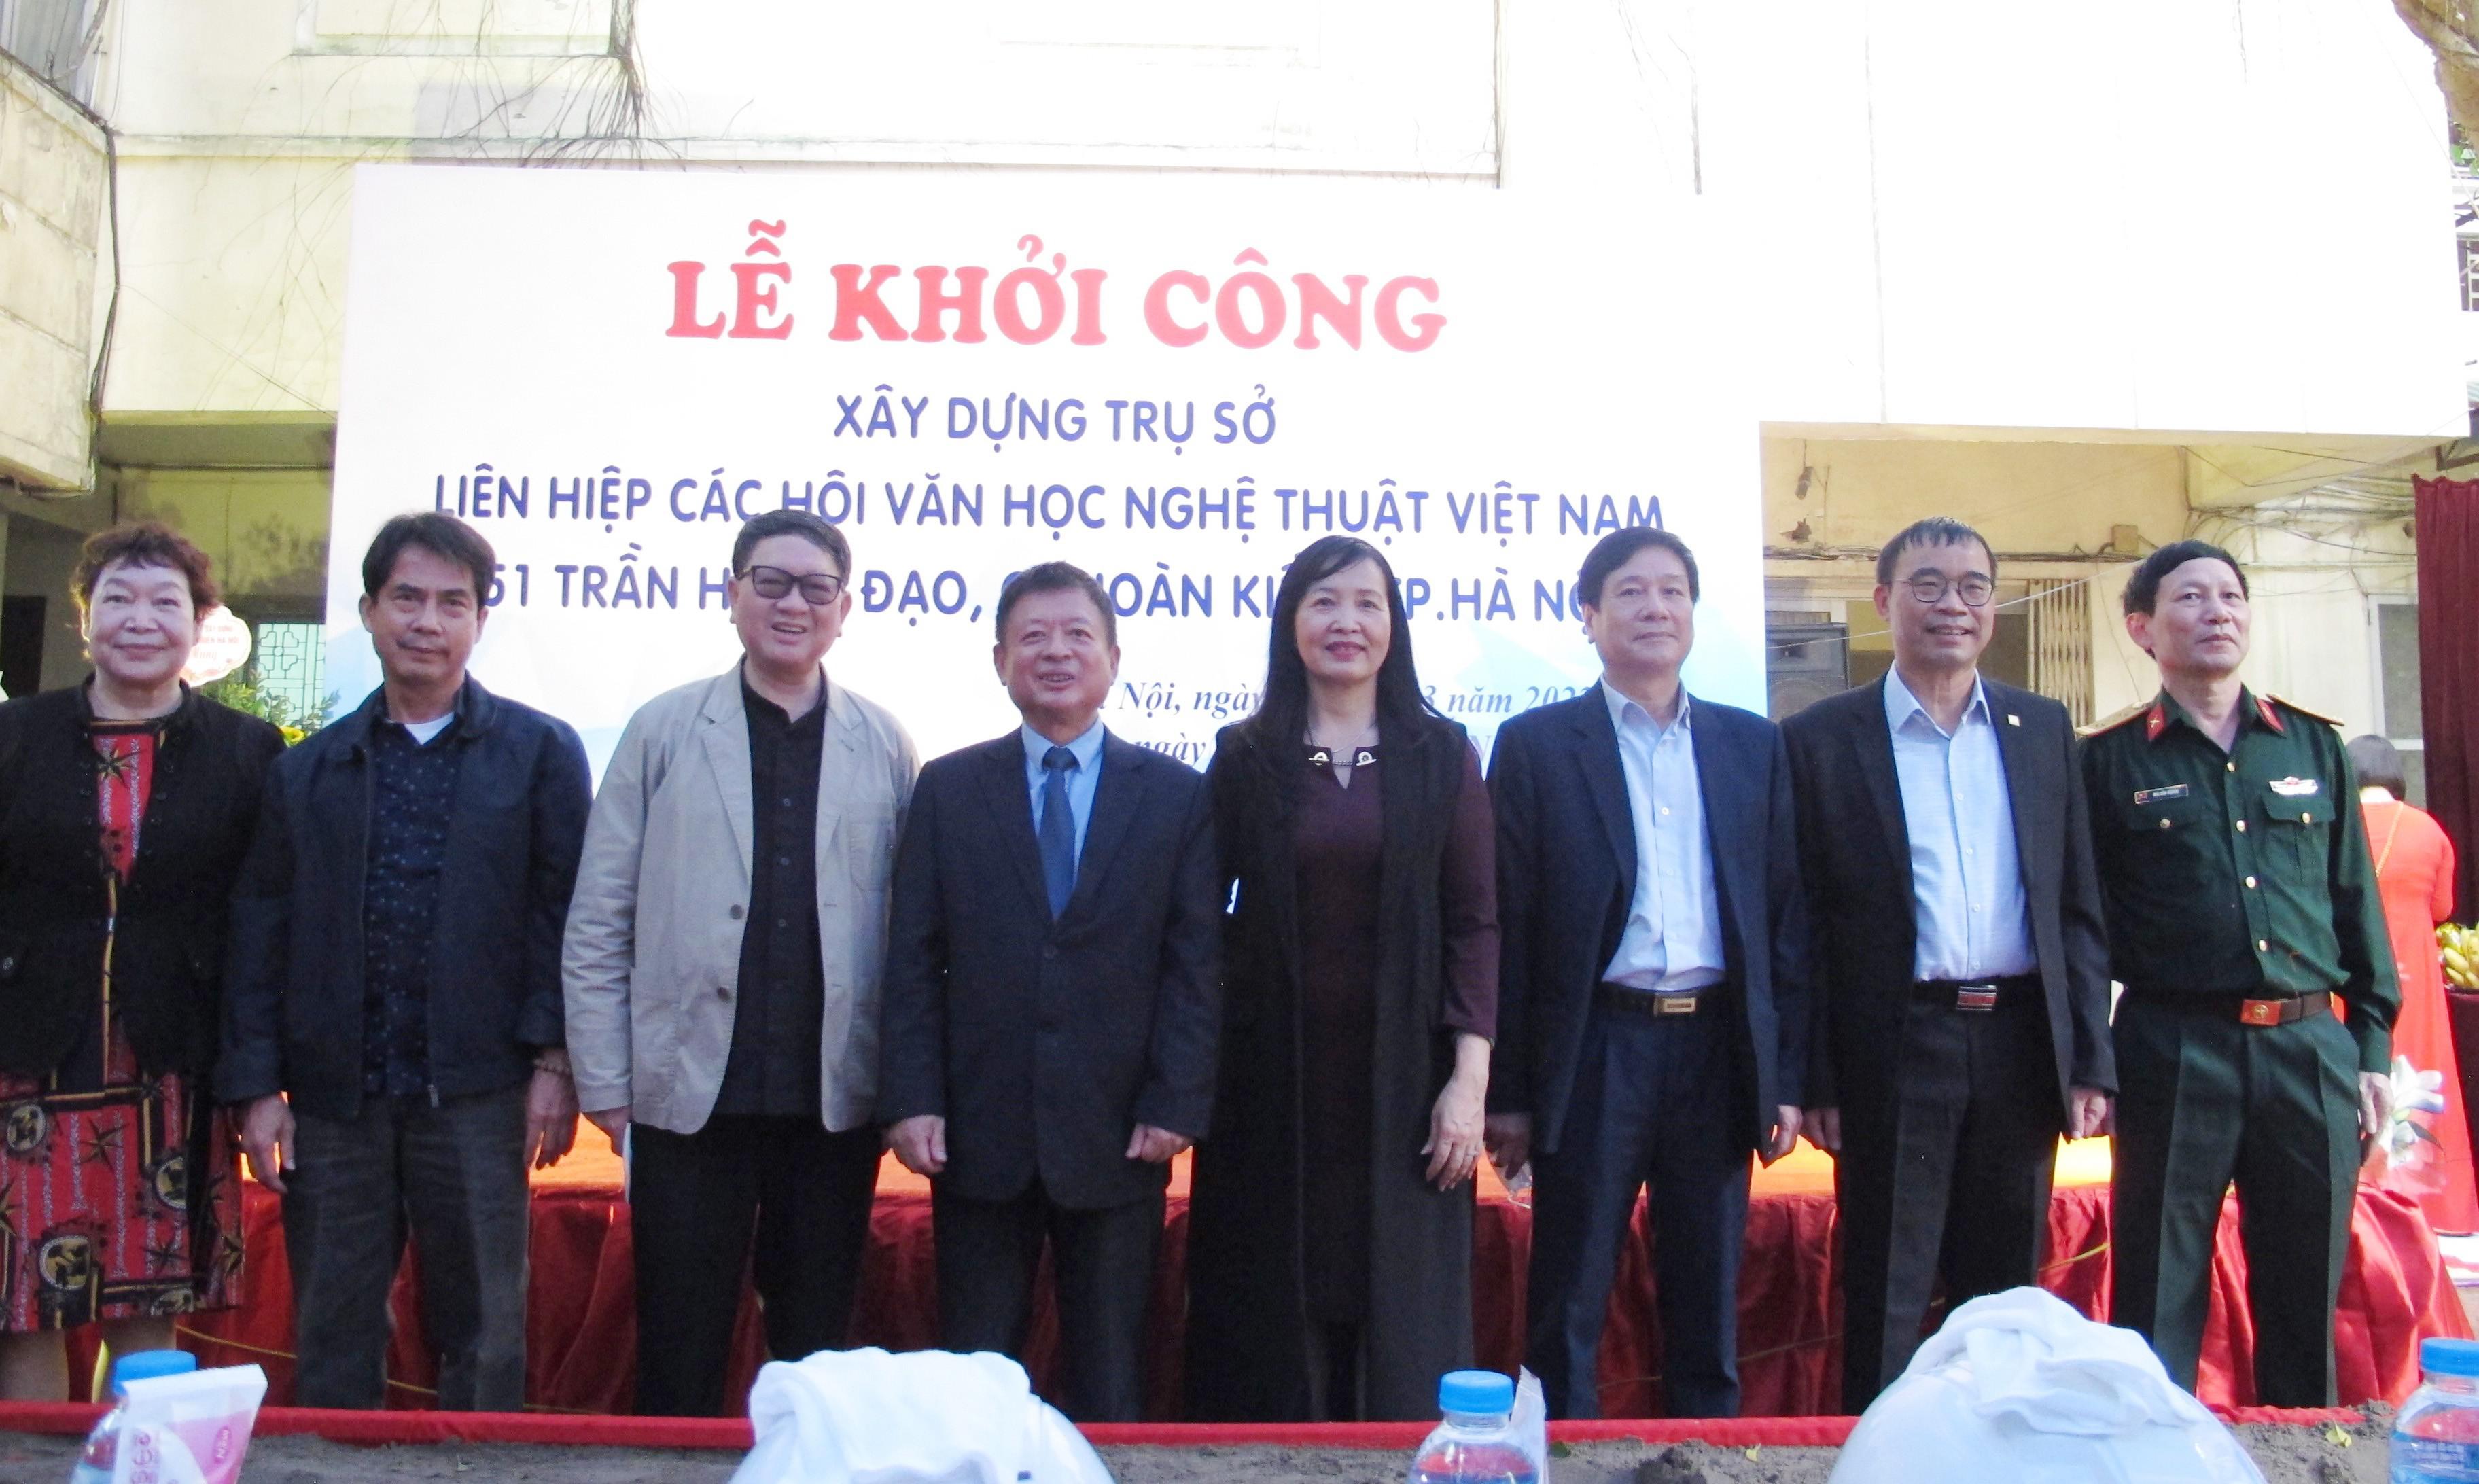 Lễ khởi công xây dựng Trụ sở Liên hiệp các Hội Văn học nghệ thuật Việt Nam - 8